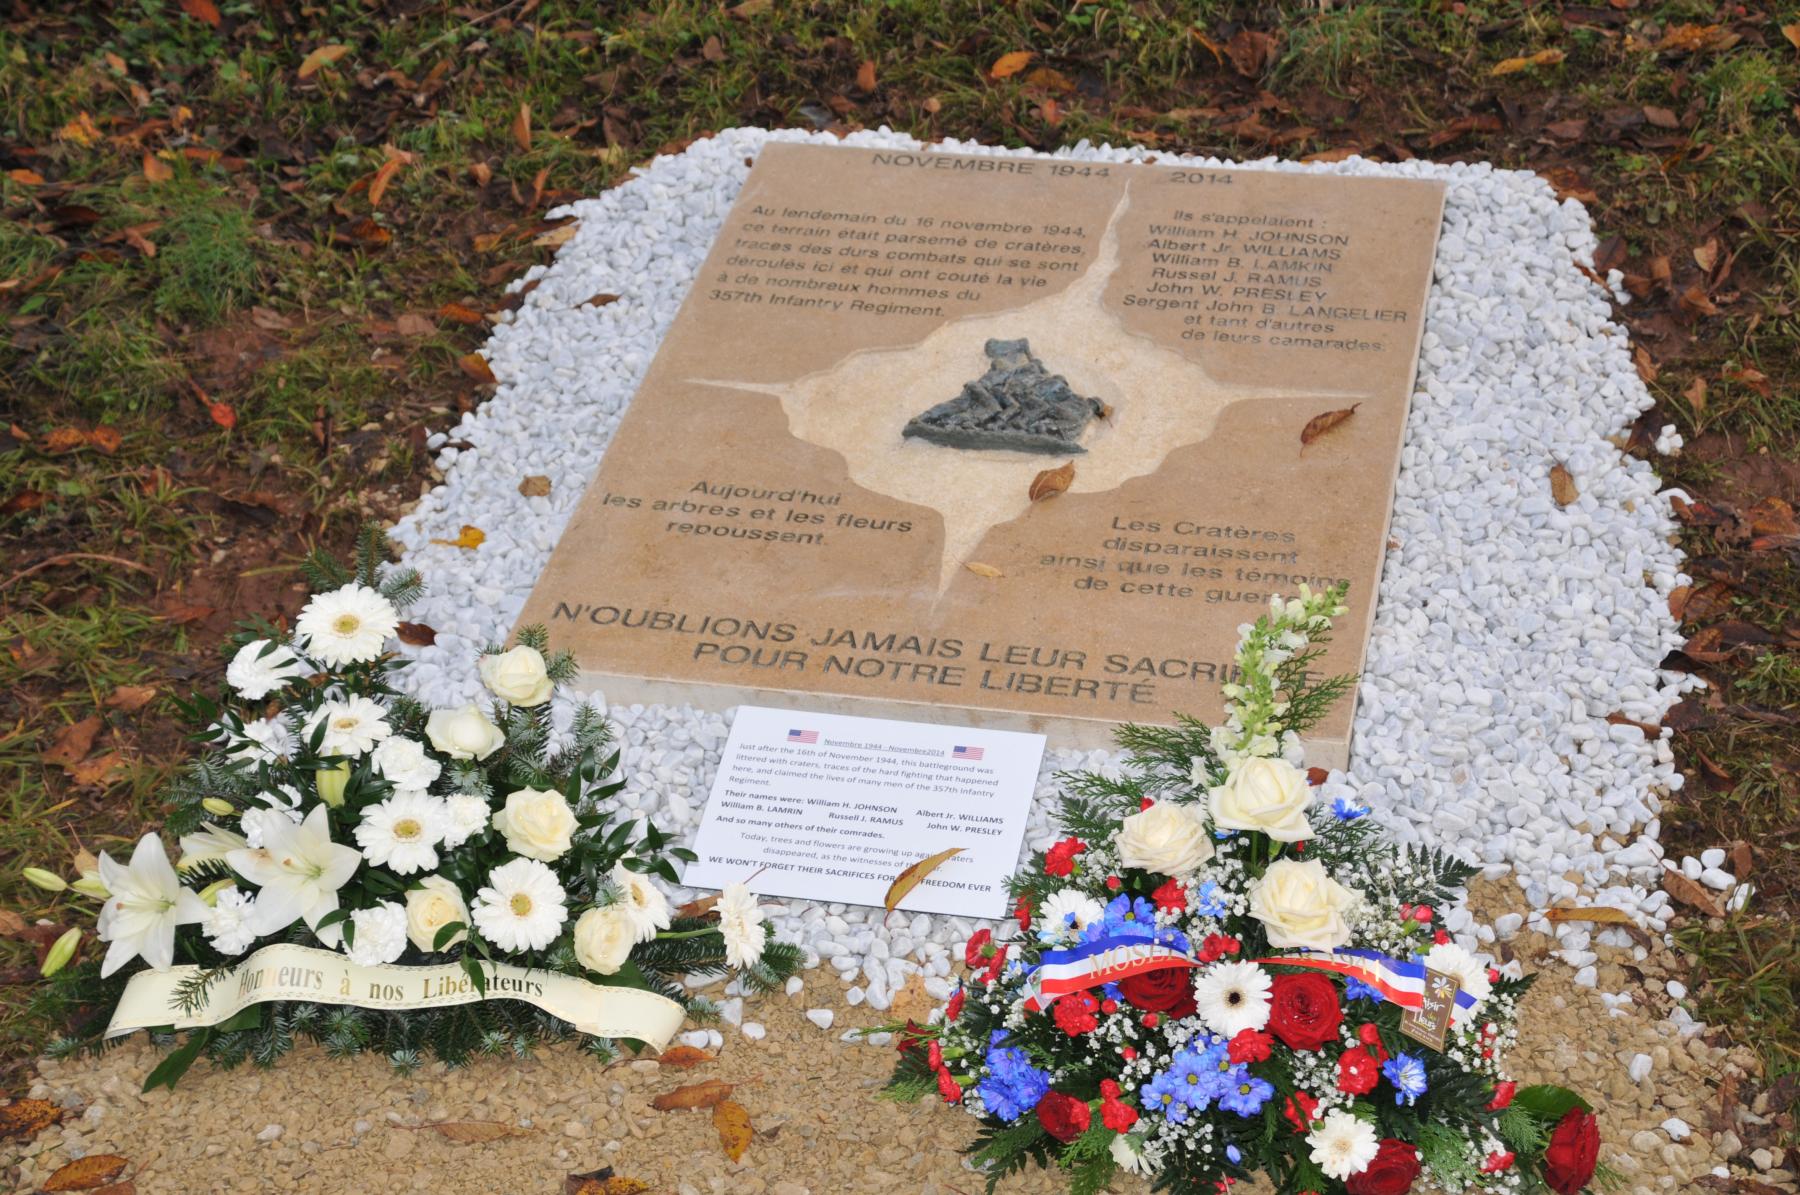 Ligne Maginot - HACKENBERG - A19 - (Ouvrage d'artillerie) - Bloc 8
Le petit monument près du bloc en souvenir des GI's tombés ici à la Libération